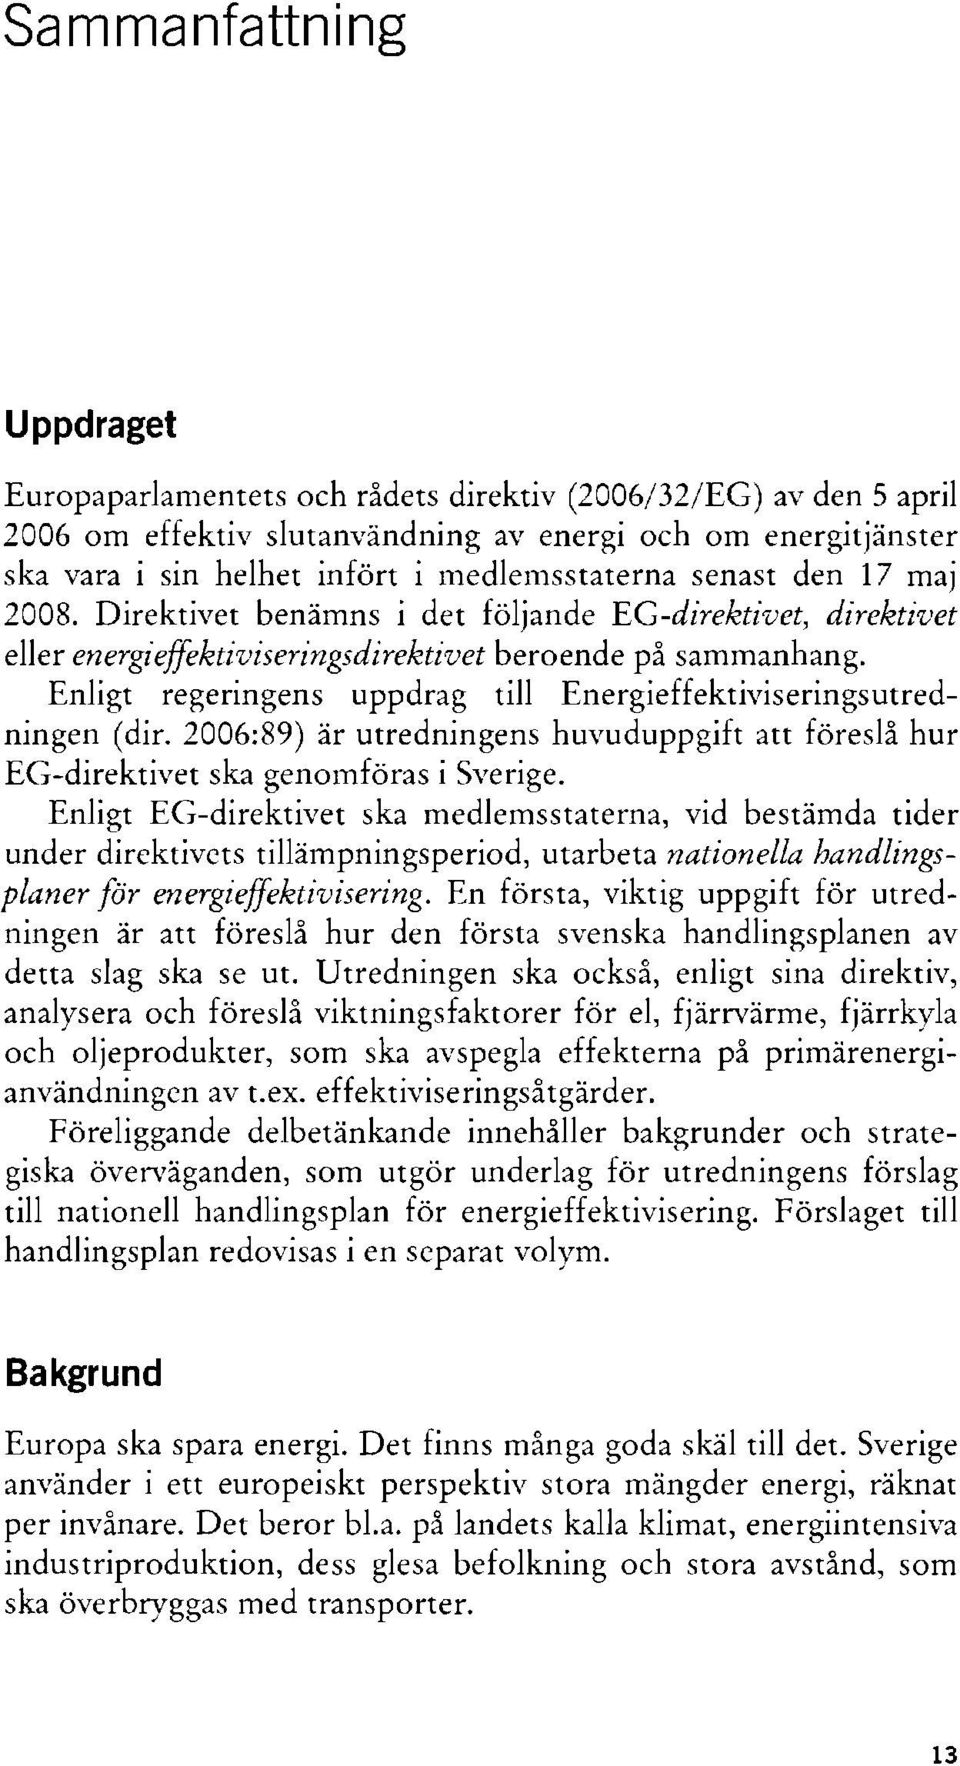 Enligt regeringens uppdrag till Energieffektiviseringsutredningen (dir. 2006:89) är utredningens huvuduppgift att föreslå hur EG-direktivet ska genomföras i Sverige.